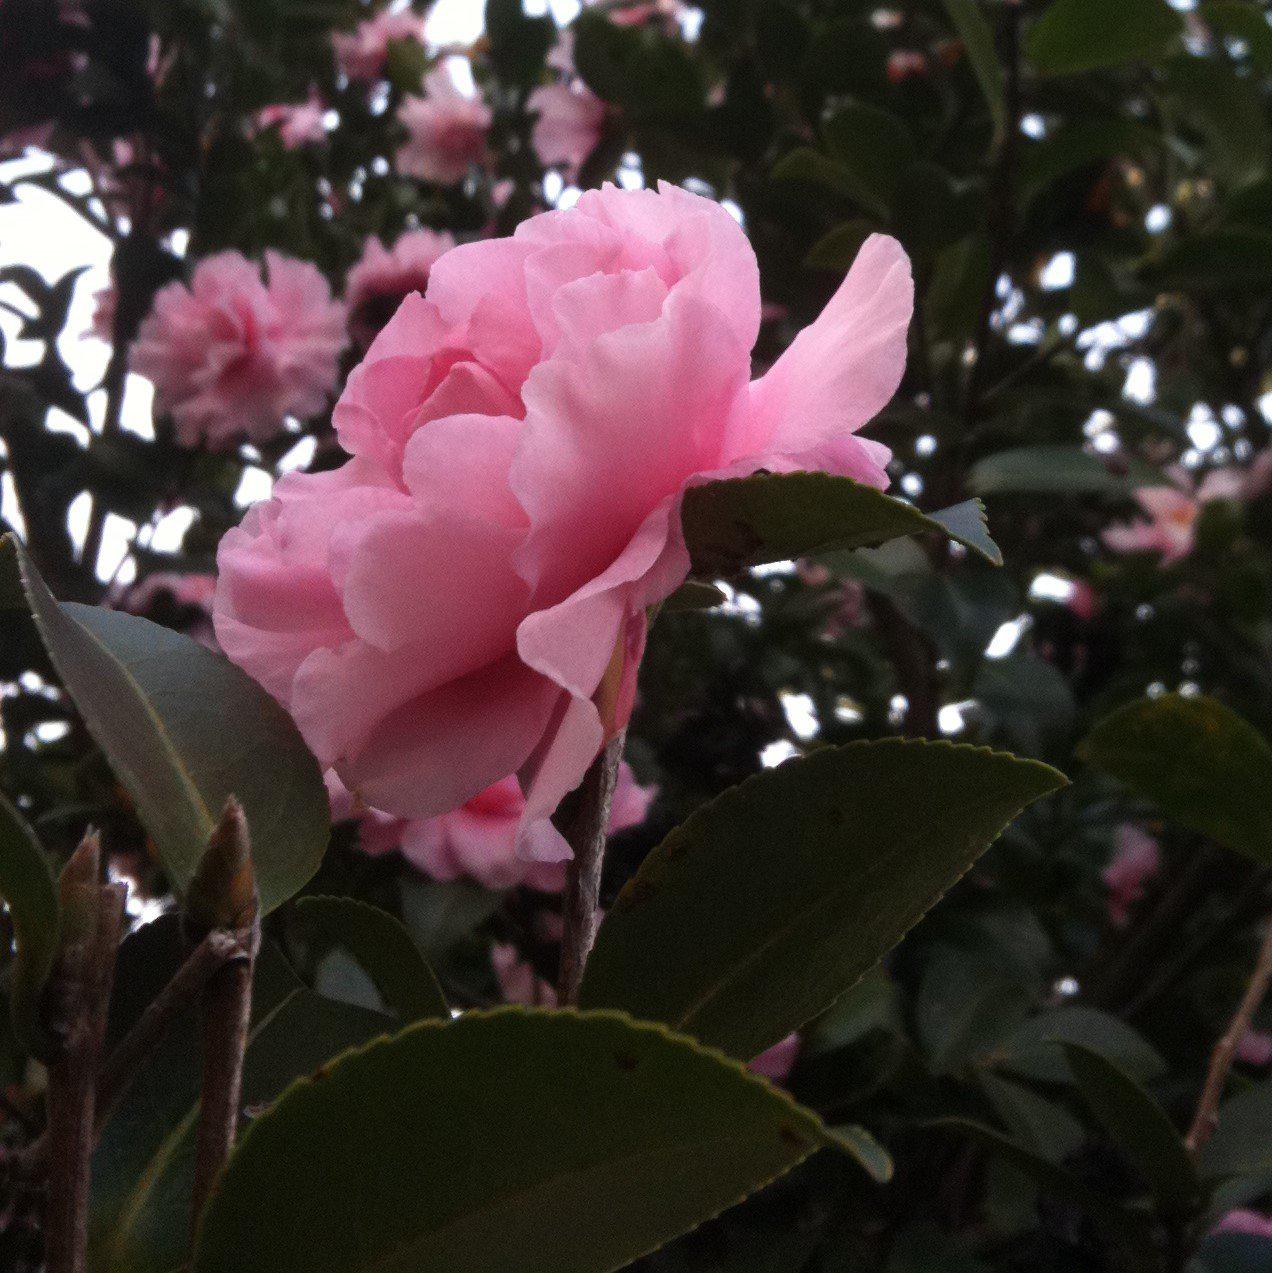 Camellia sasanqua 'Cotton Candy' ~ Cotton Candy Camellia